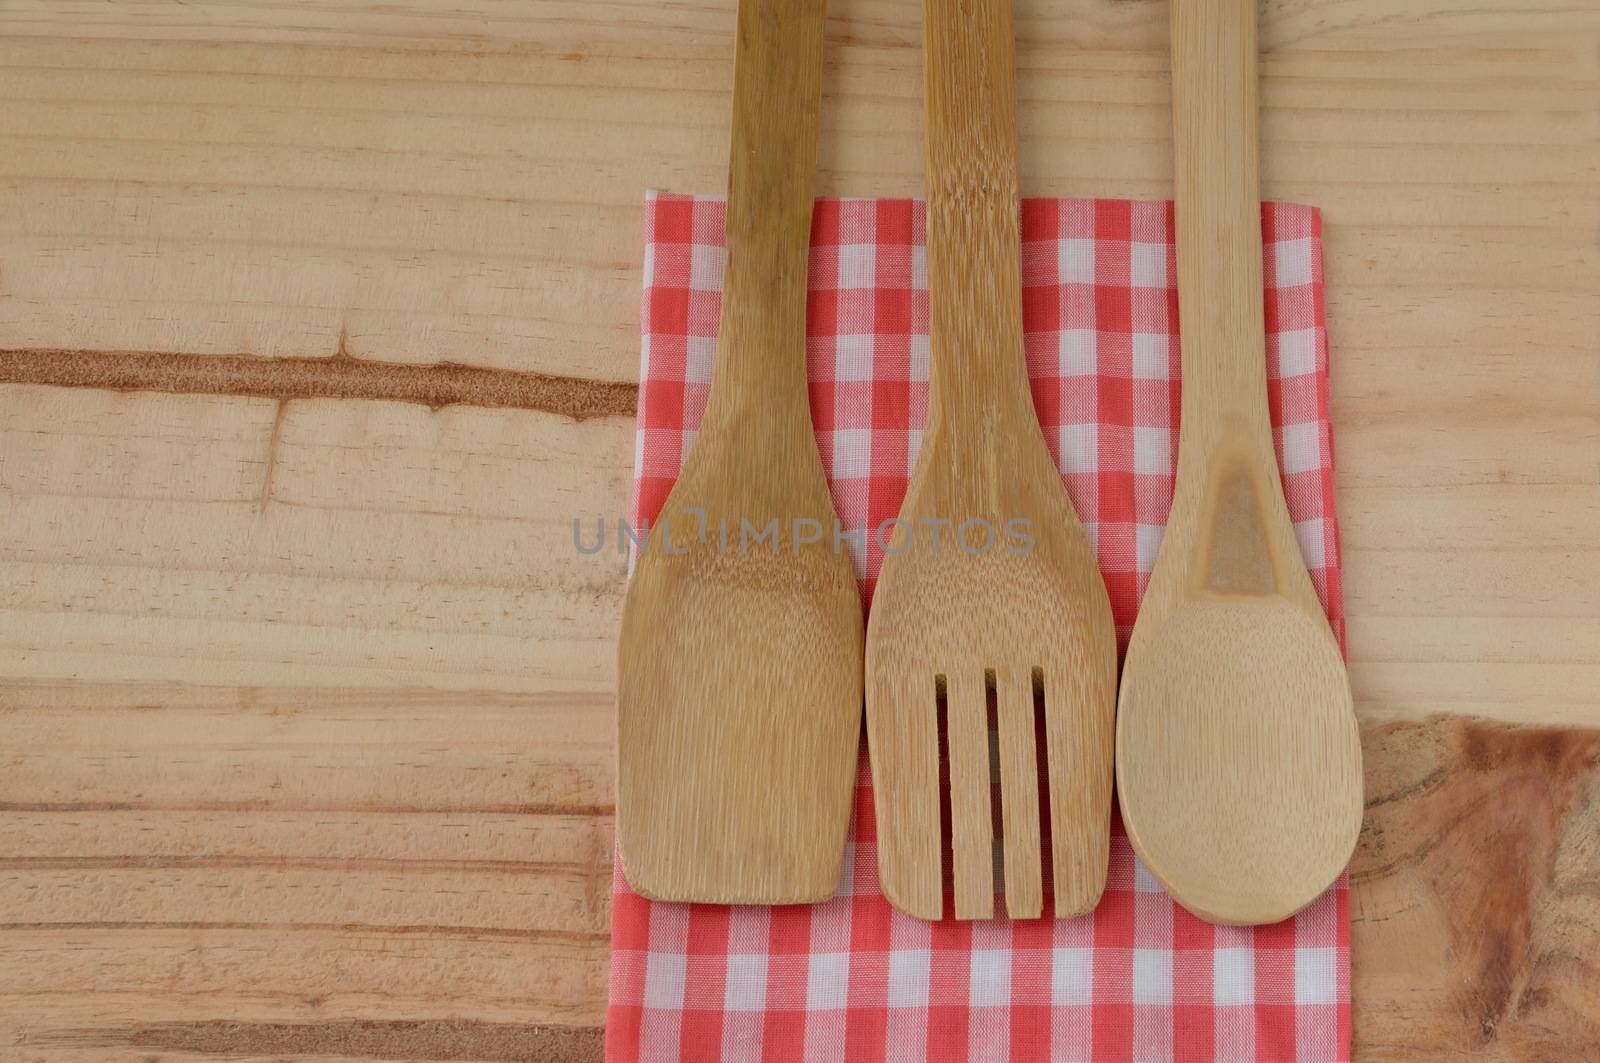 Wooden kitchen utensils on wooden background by Kheat